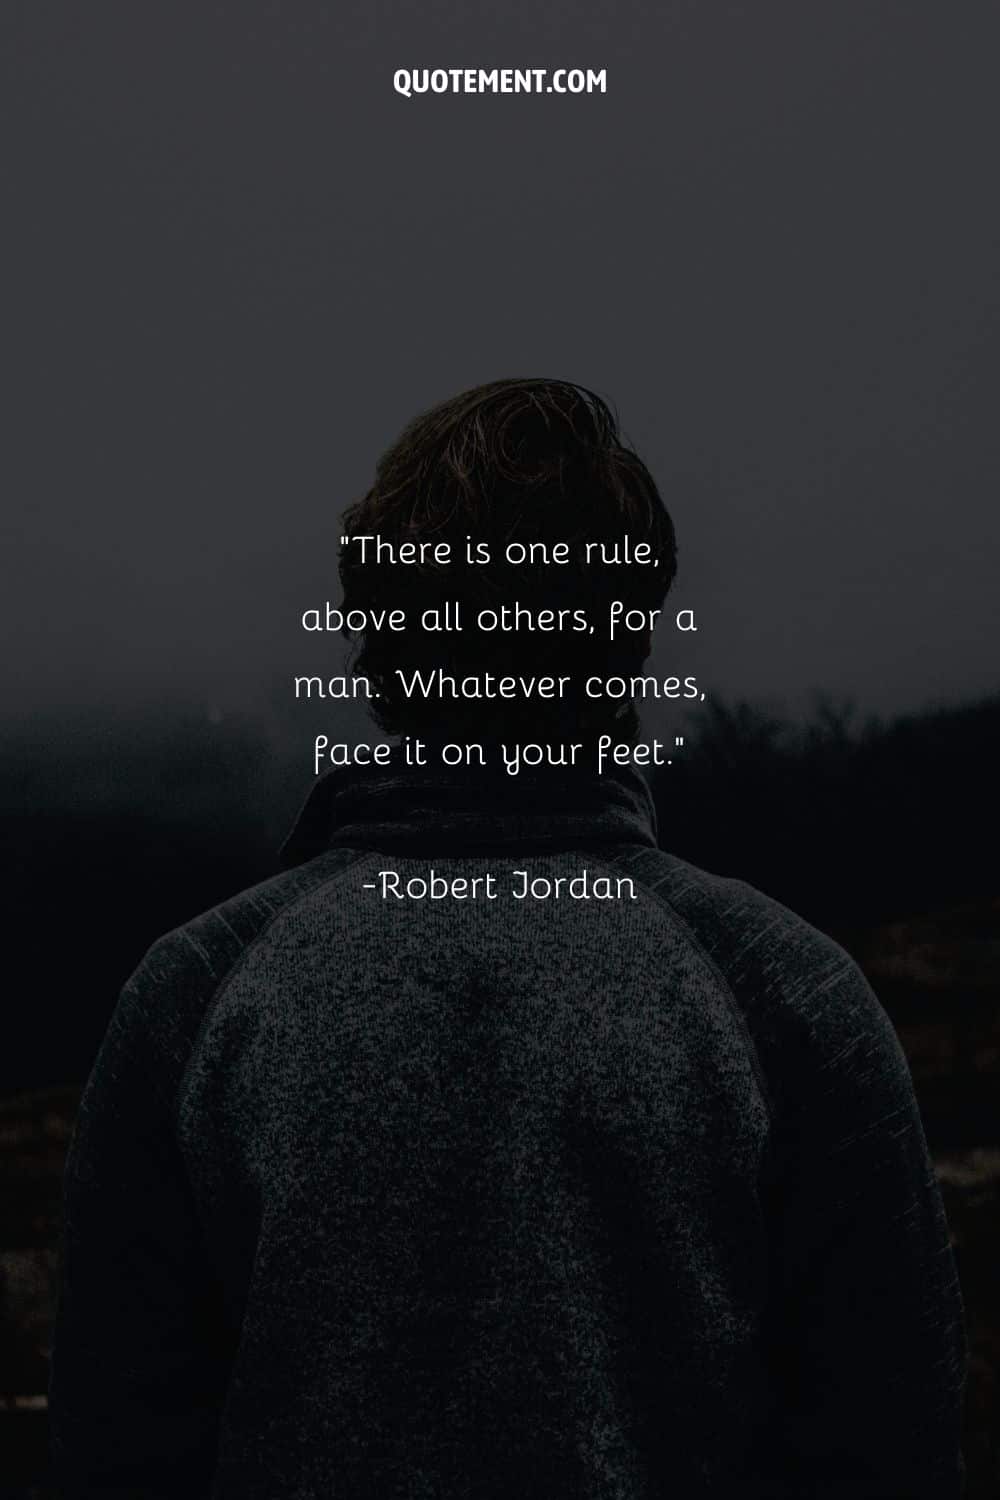 imagen trasera de un hombre que representa la cita de Robert Jordan